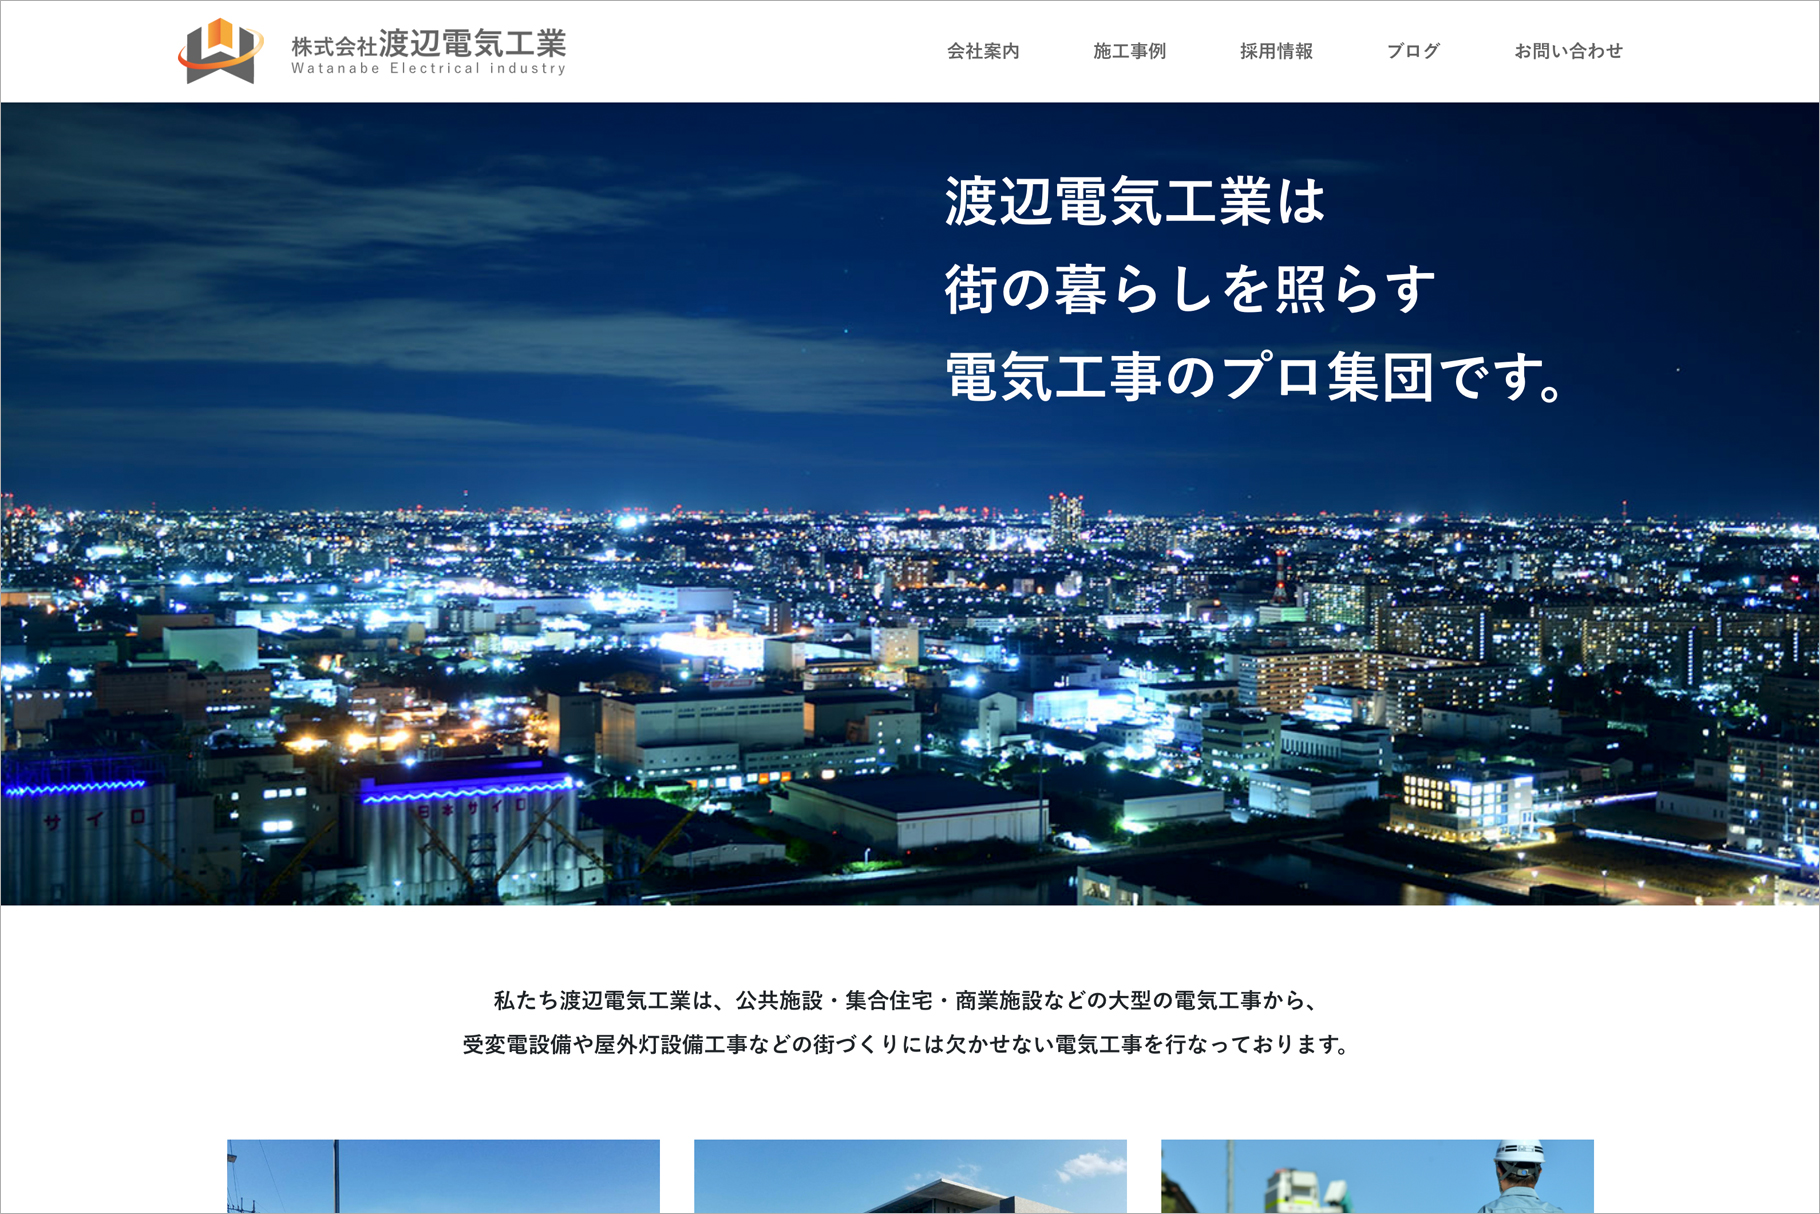 渡辺電気工業ホームページ